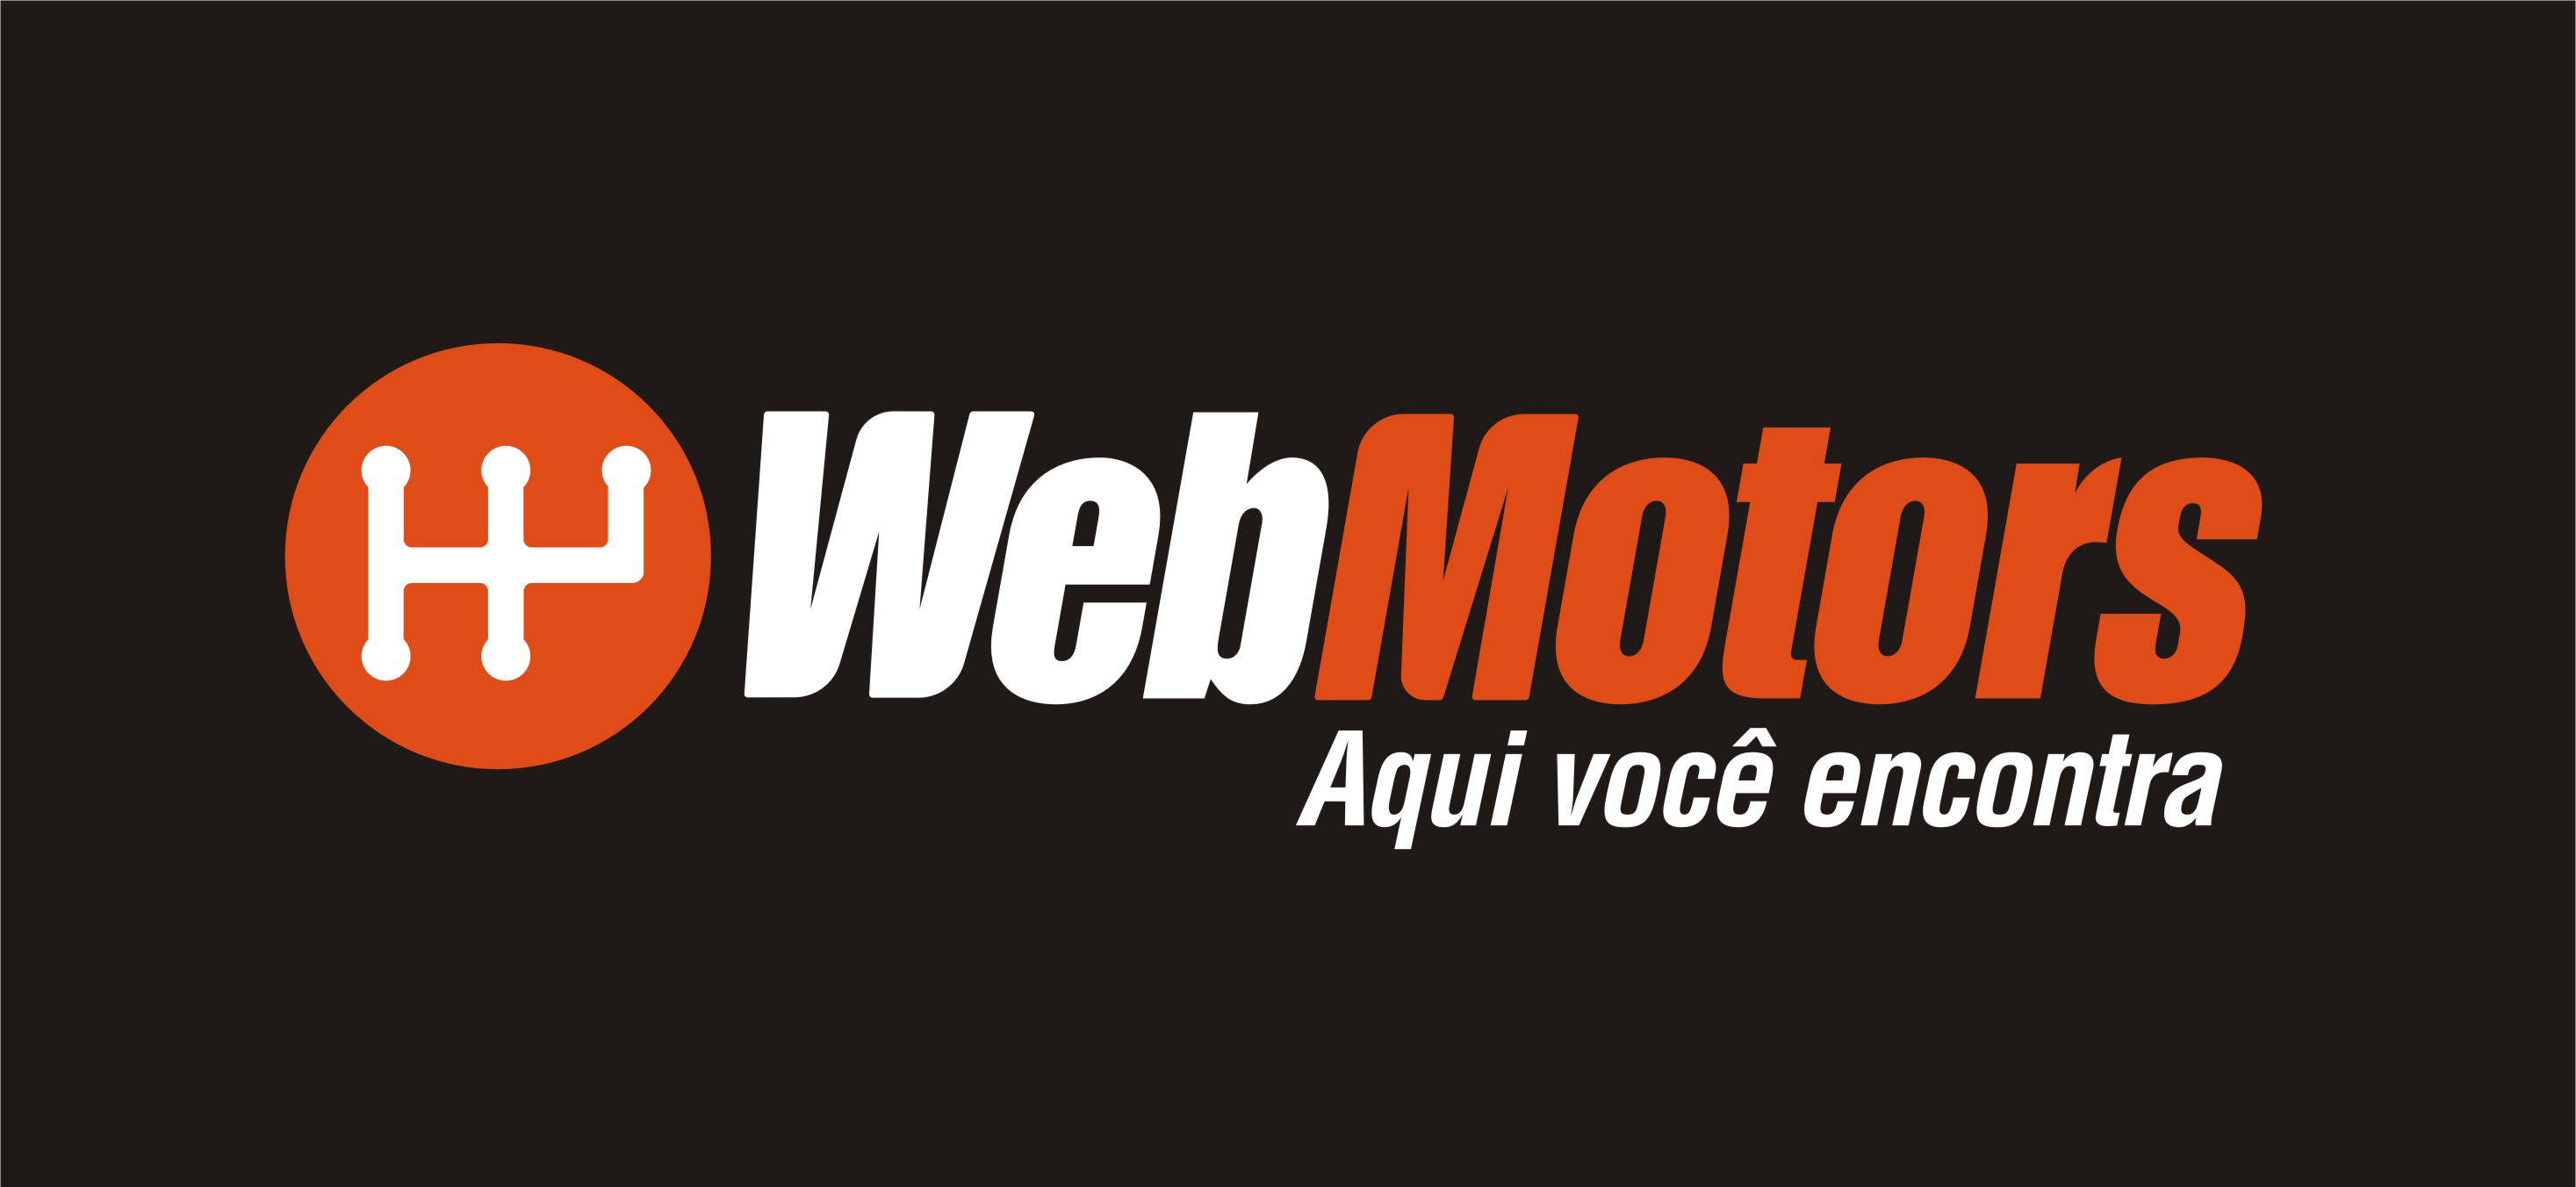 Webmotors: Venda, compare e compre carros e motos - Apps 